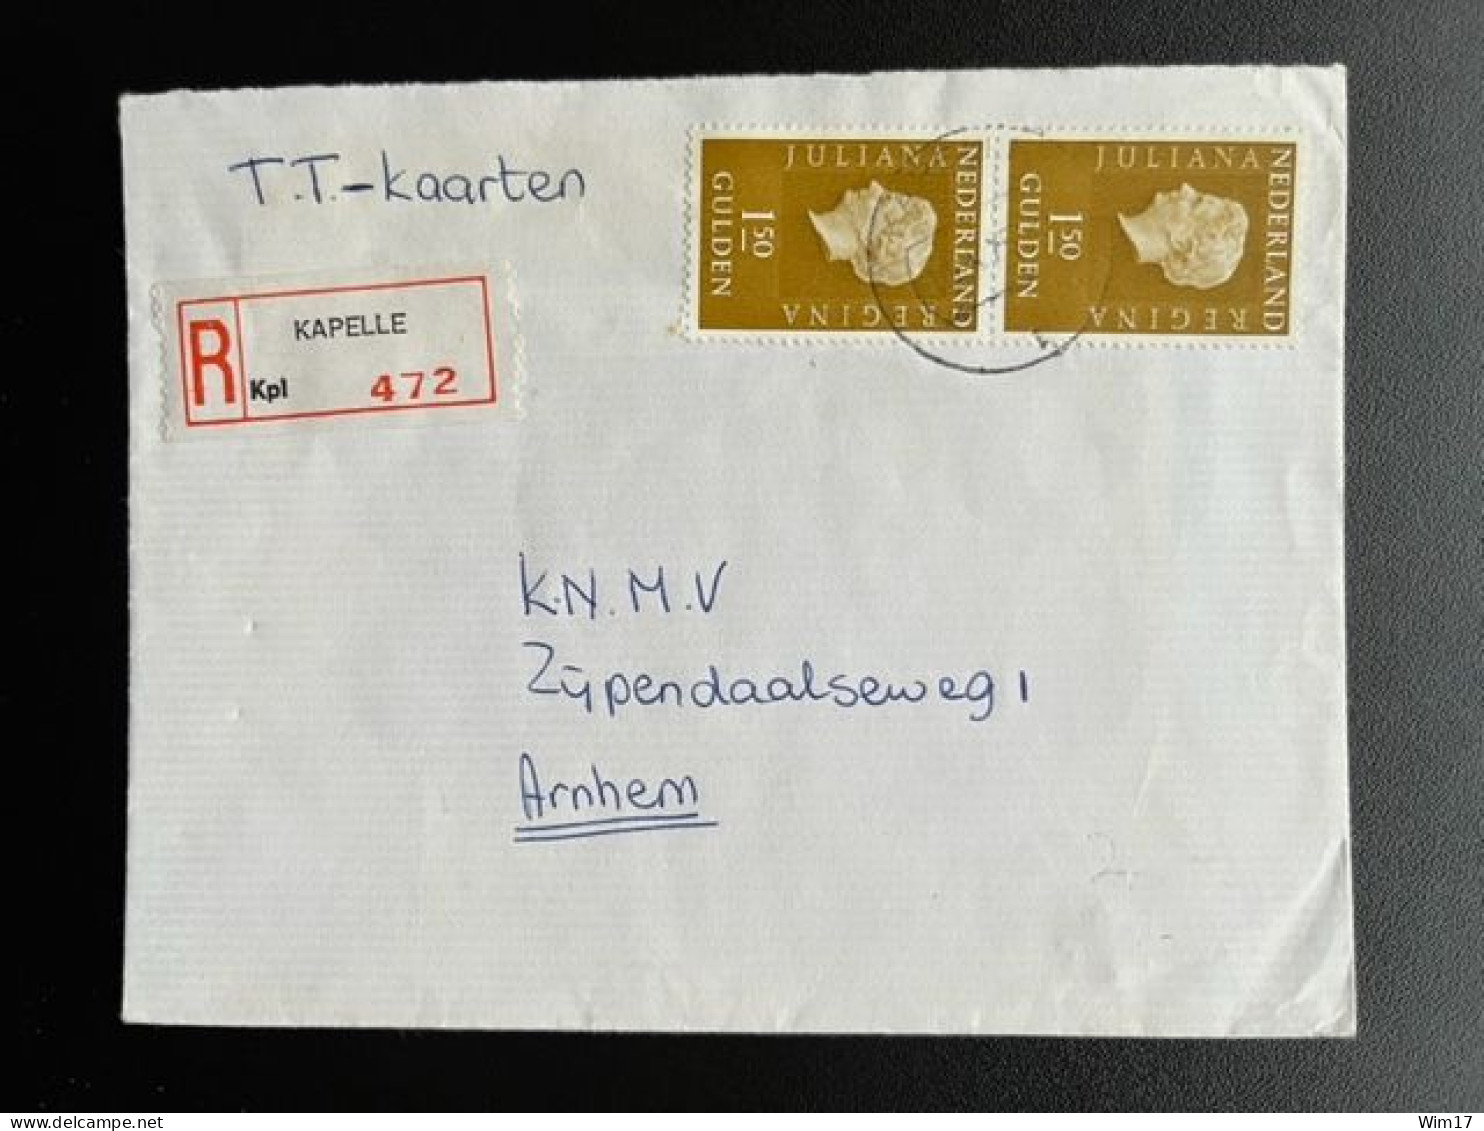 NETHERLANDS 1975 REGISTERED LETTER KAPELLE TO ARNHEM 16-02-1975 NEDERLAND AANGETEKEND - Briefe U. Dokumente